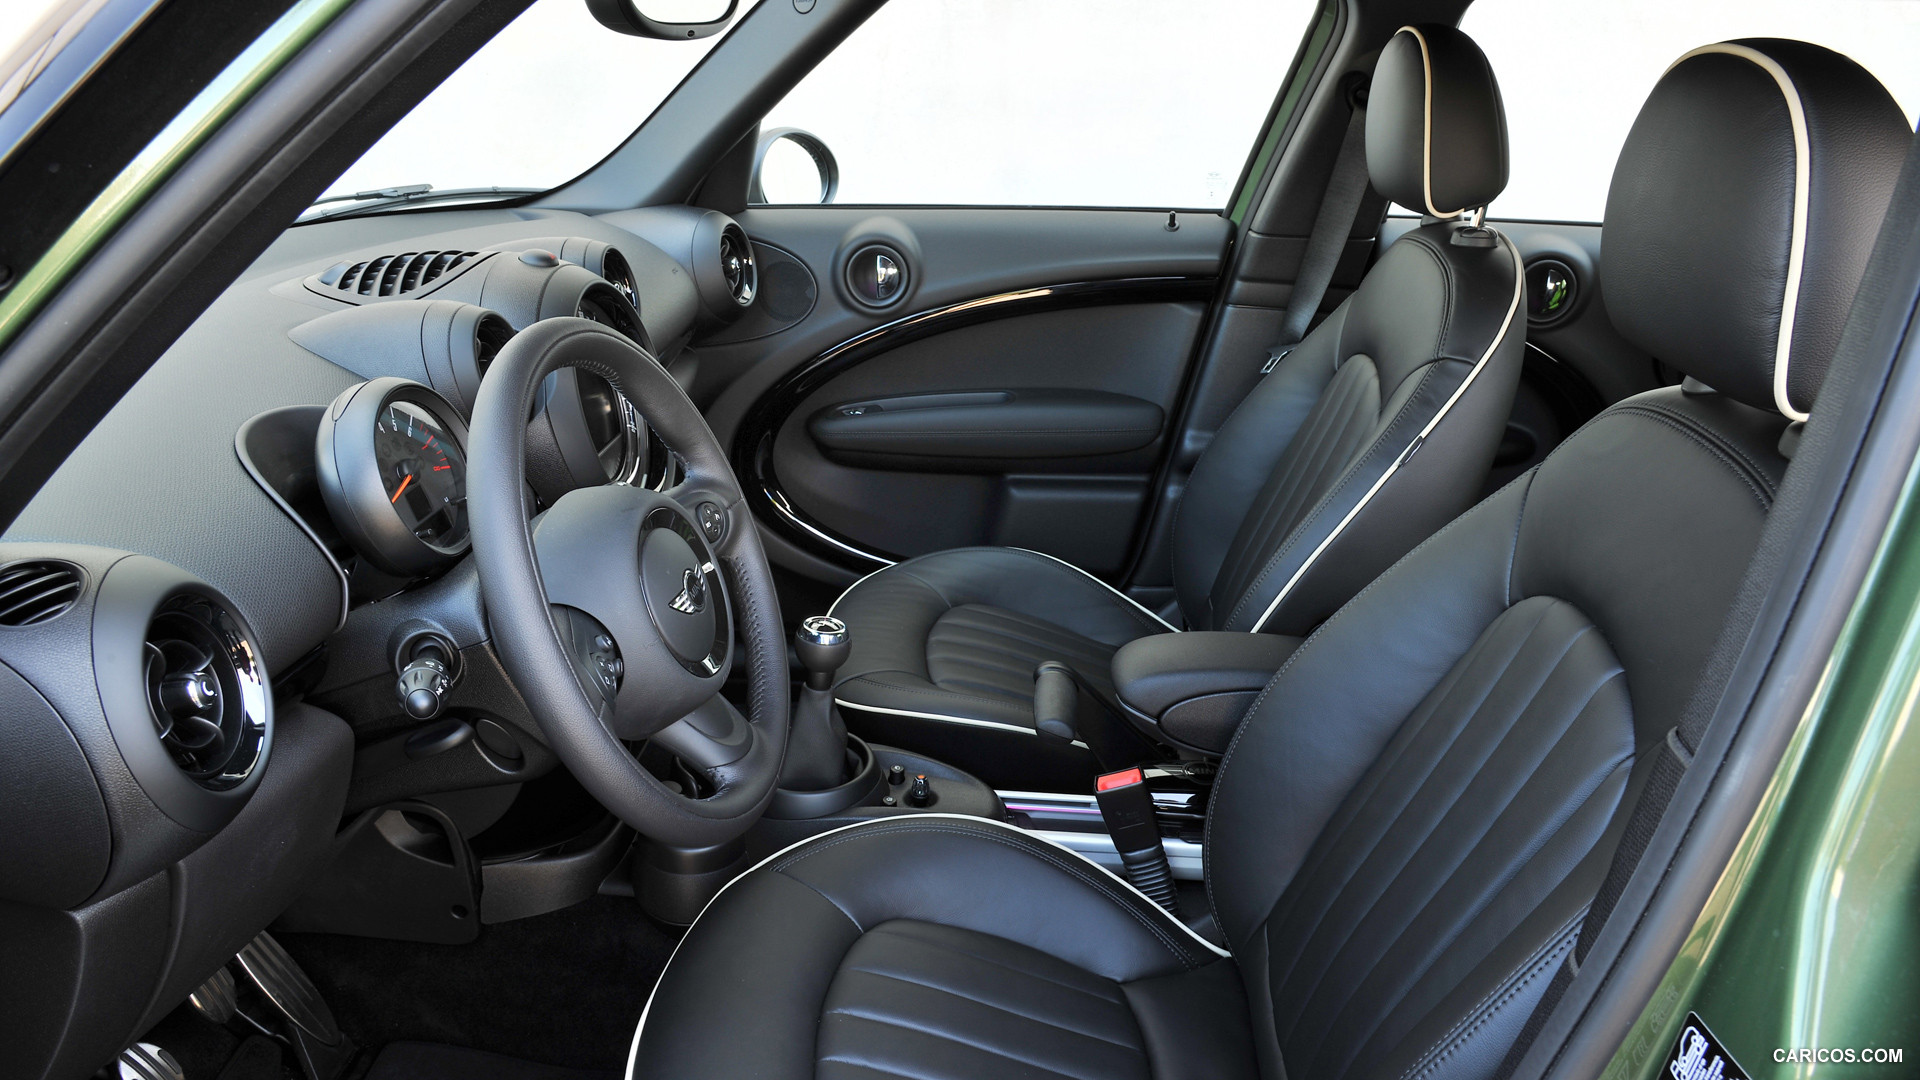 2015 MINI Cooper S Countryman  - Interior, #195 of 291